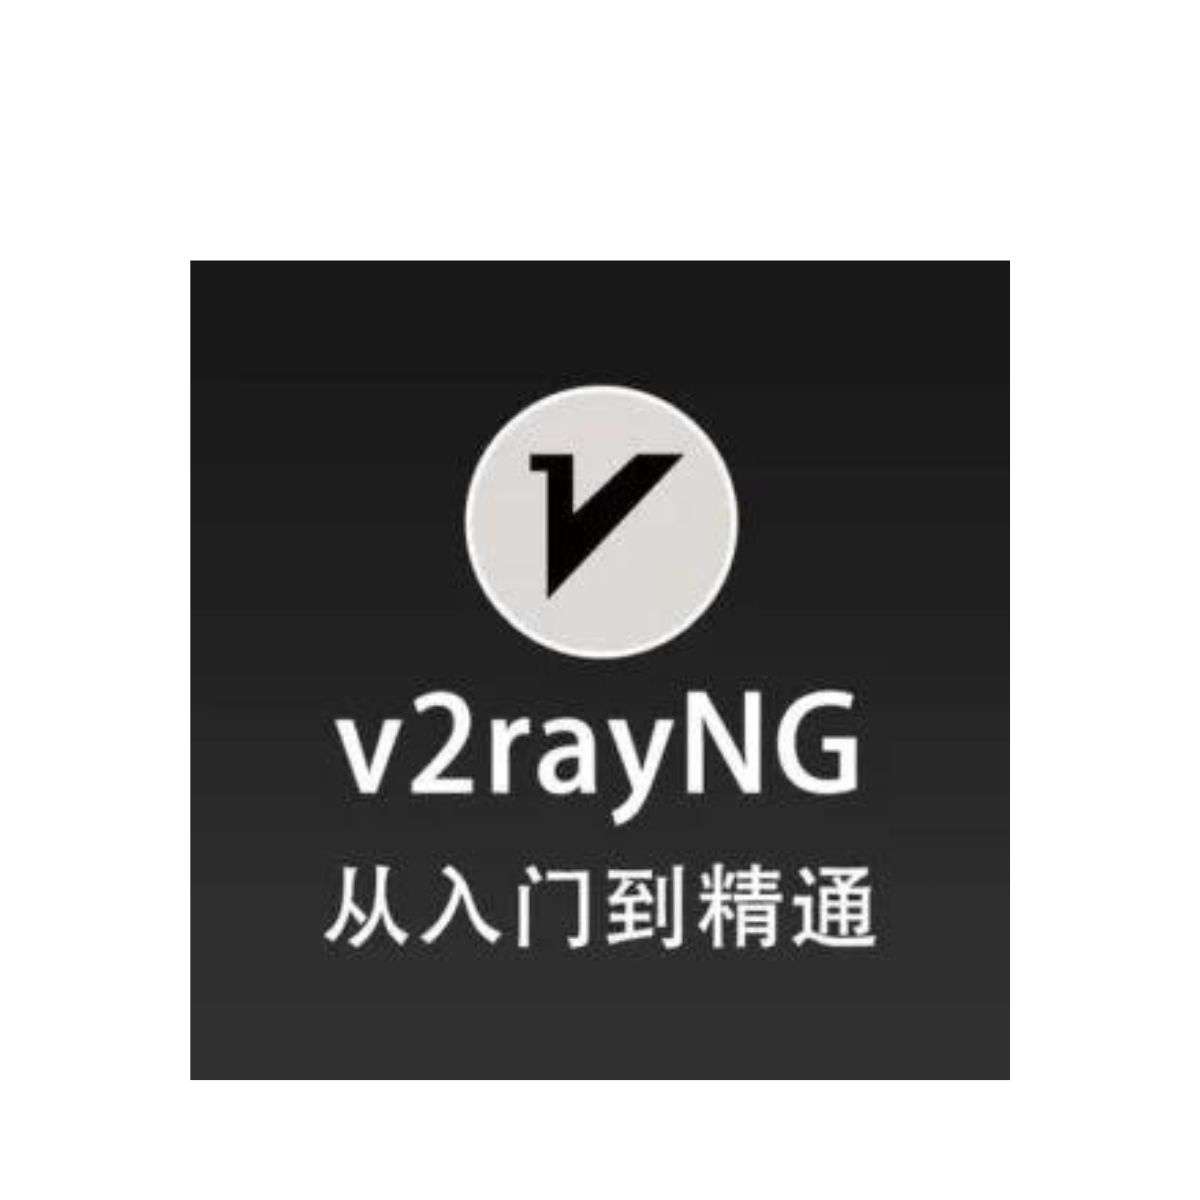 آموزش و روش کار با v2rayNG در اندروید/نحوه اضافه کردن کد و کانفیگ و سرور